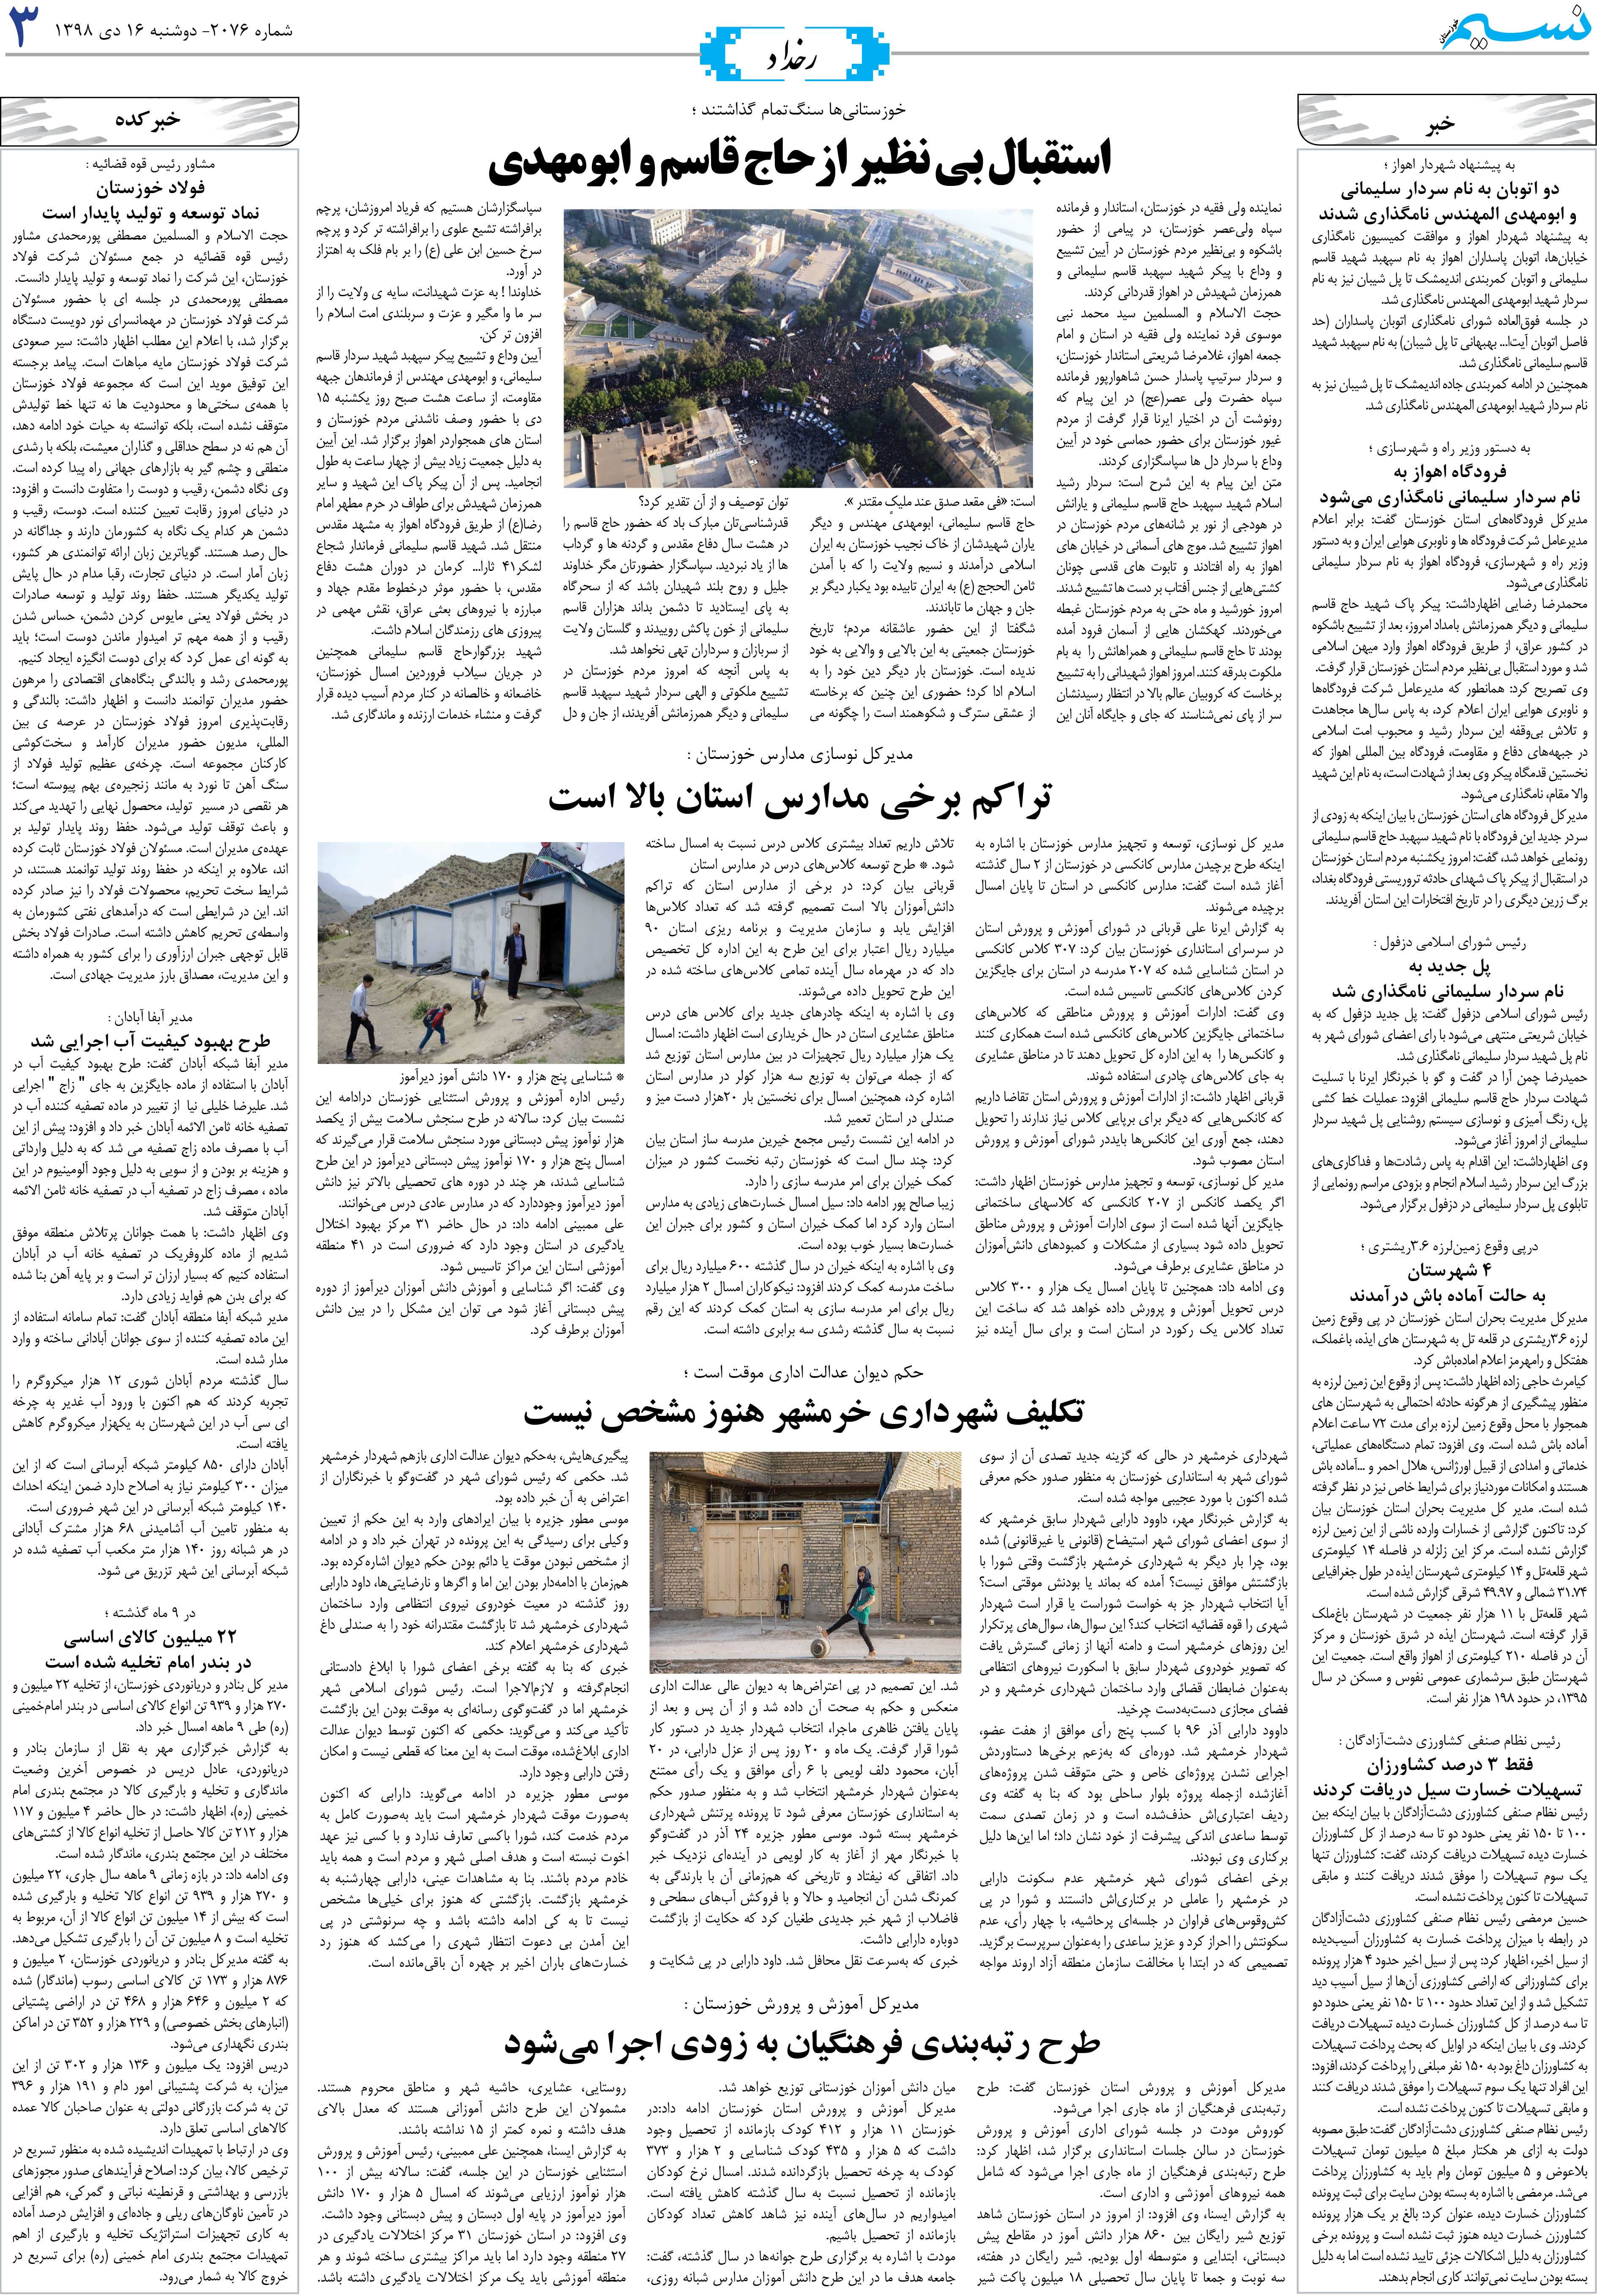 صفحه رخداد روزنامه نسیم شماره 2076